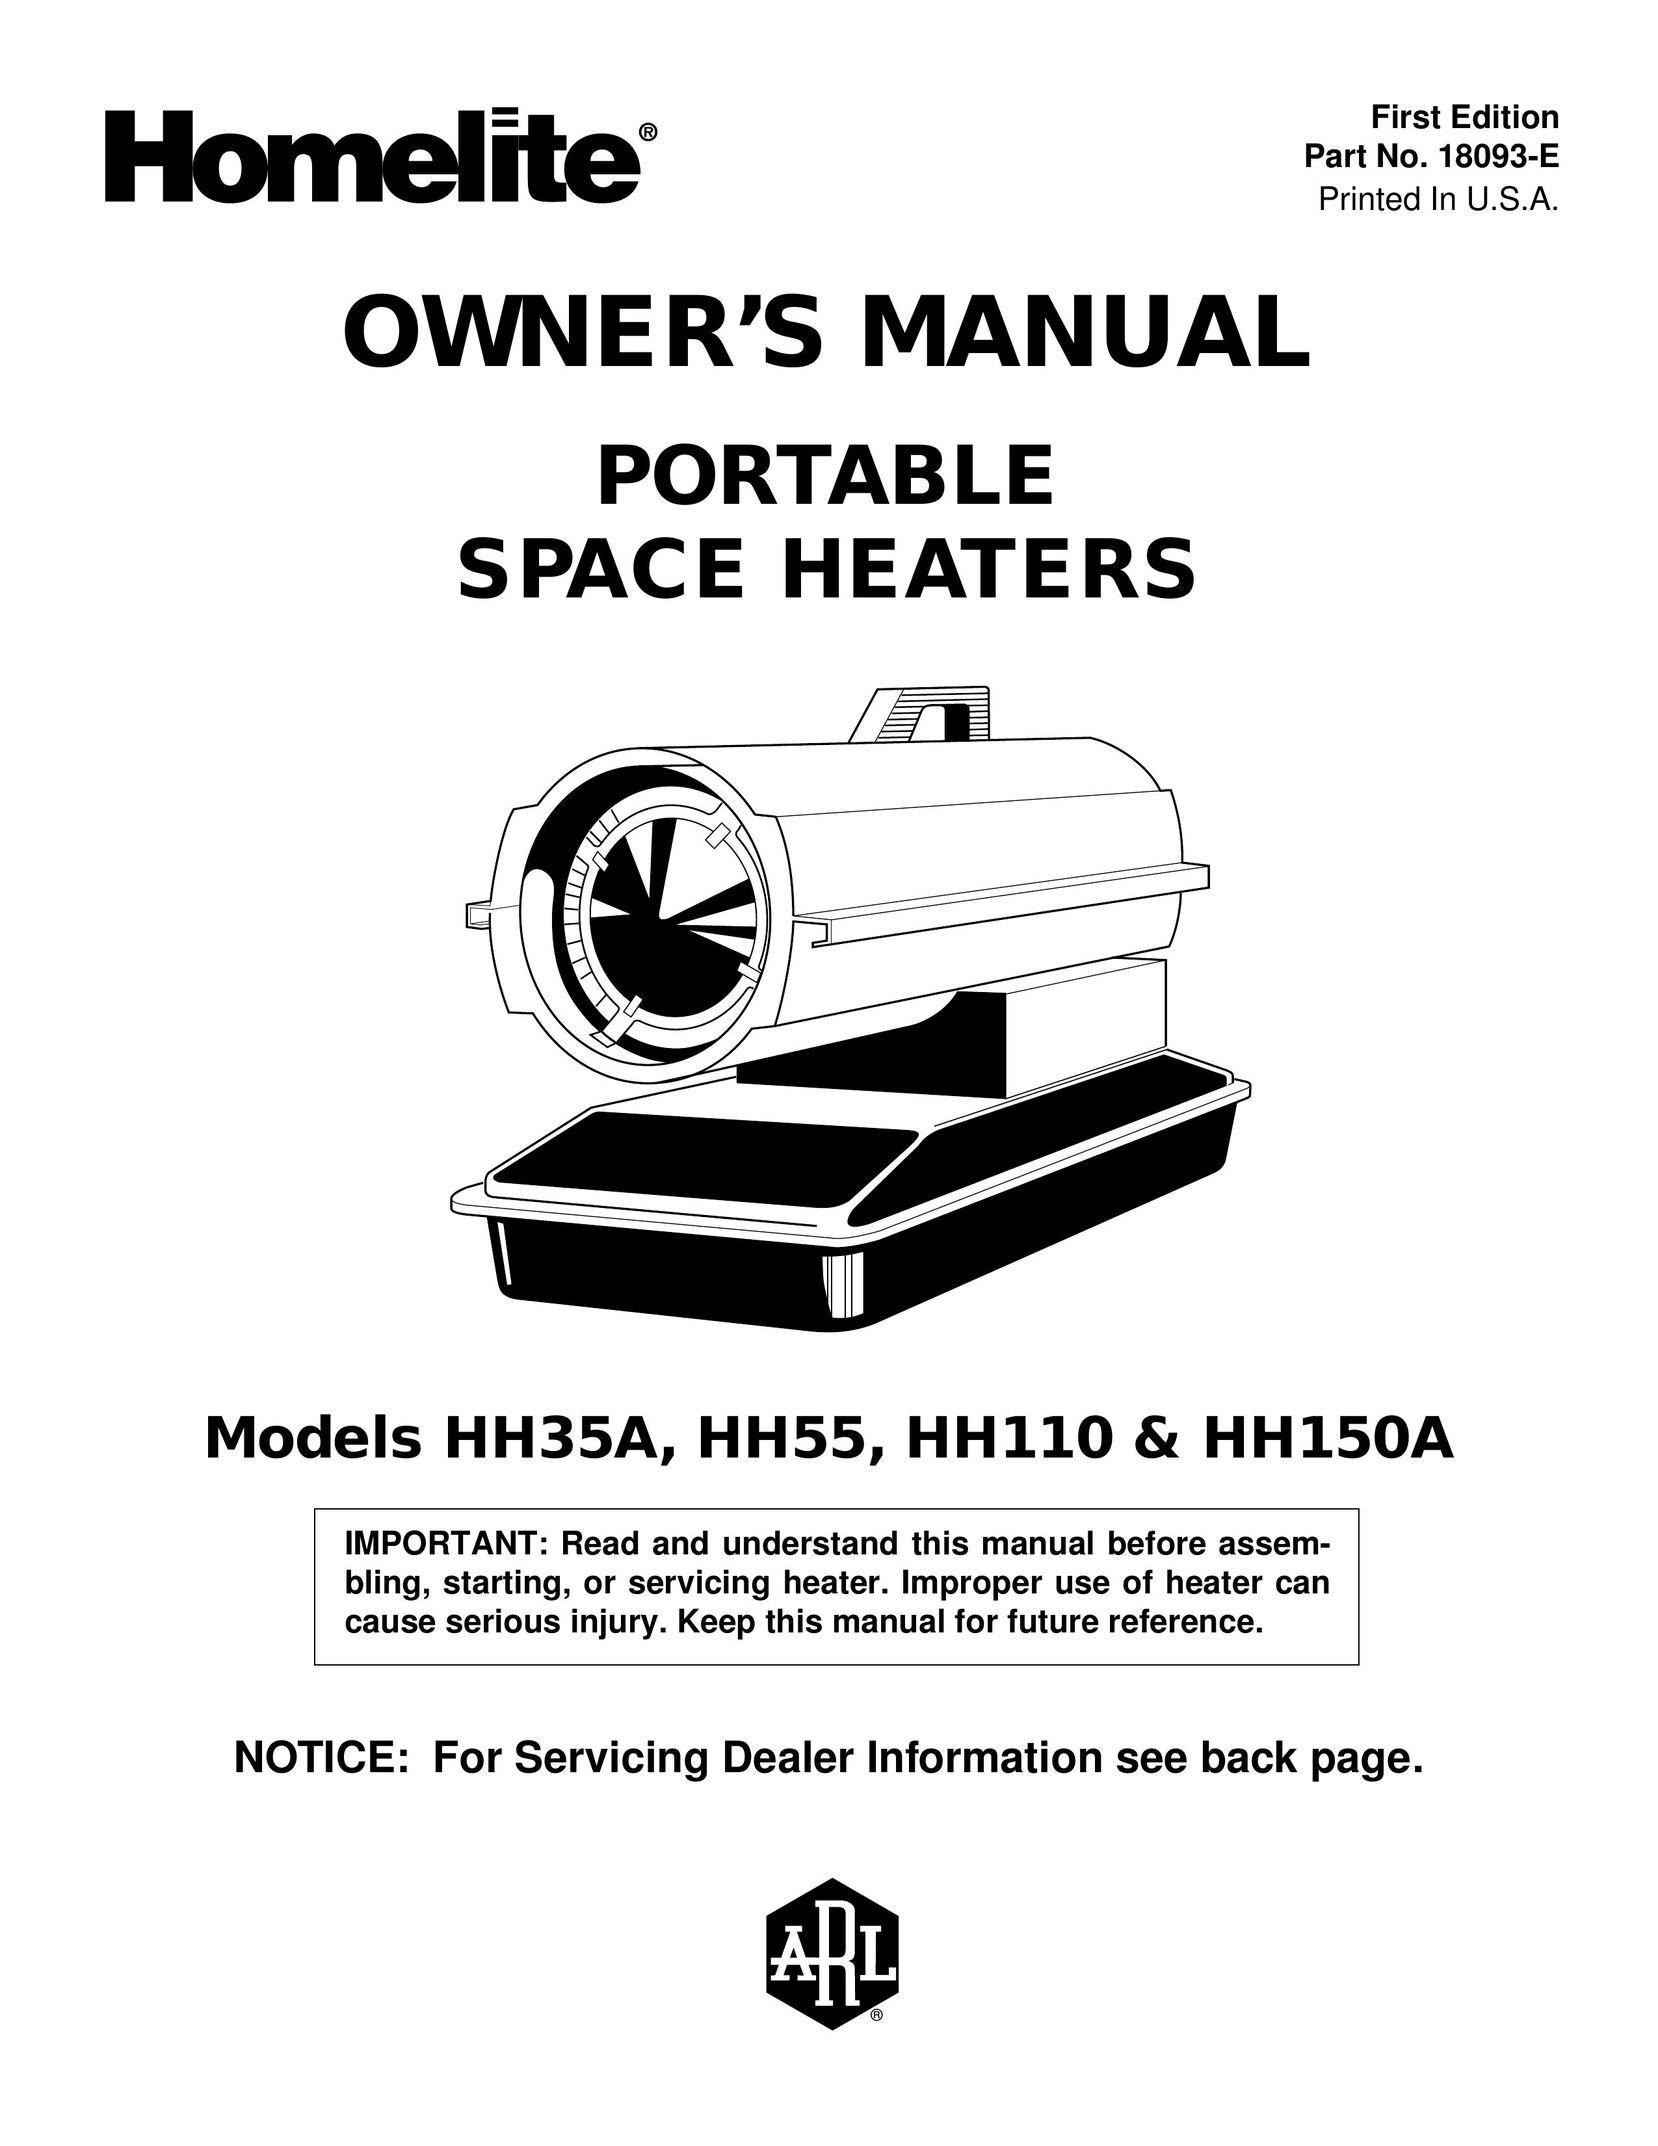 Homelite HH110 & HH150A Electric Heater User Manual